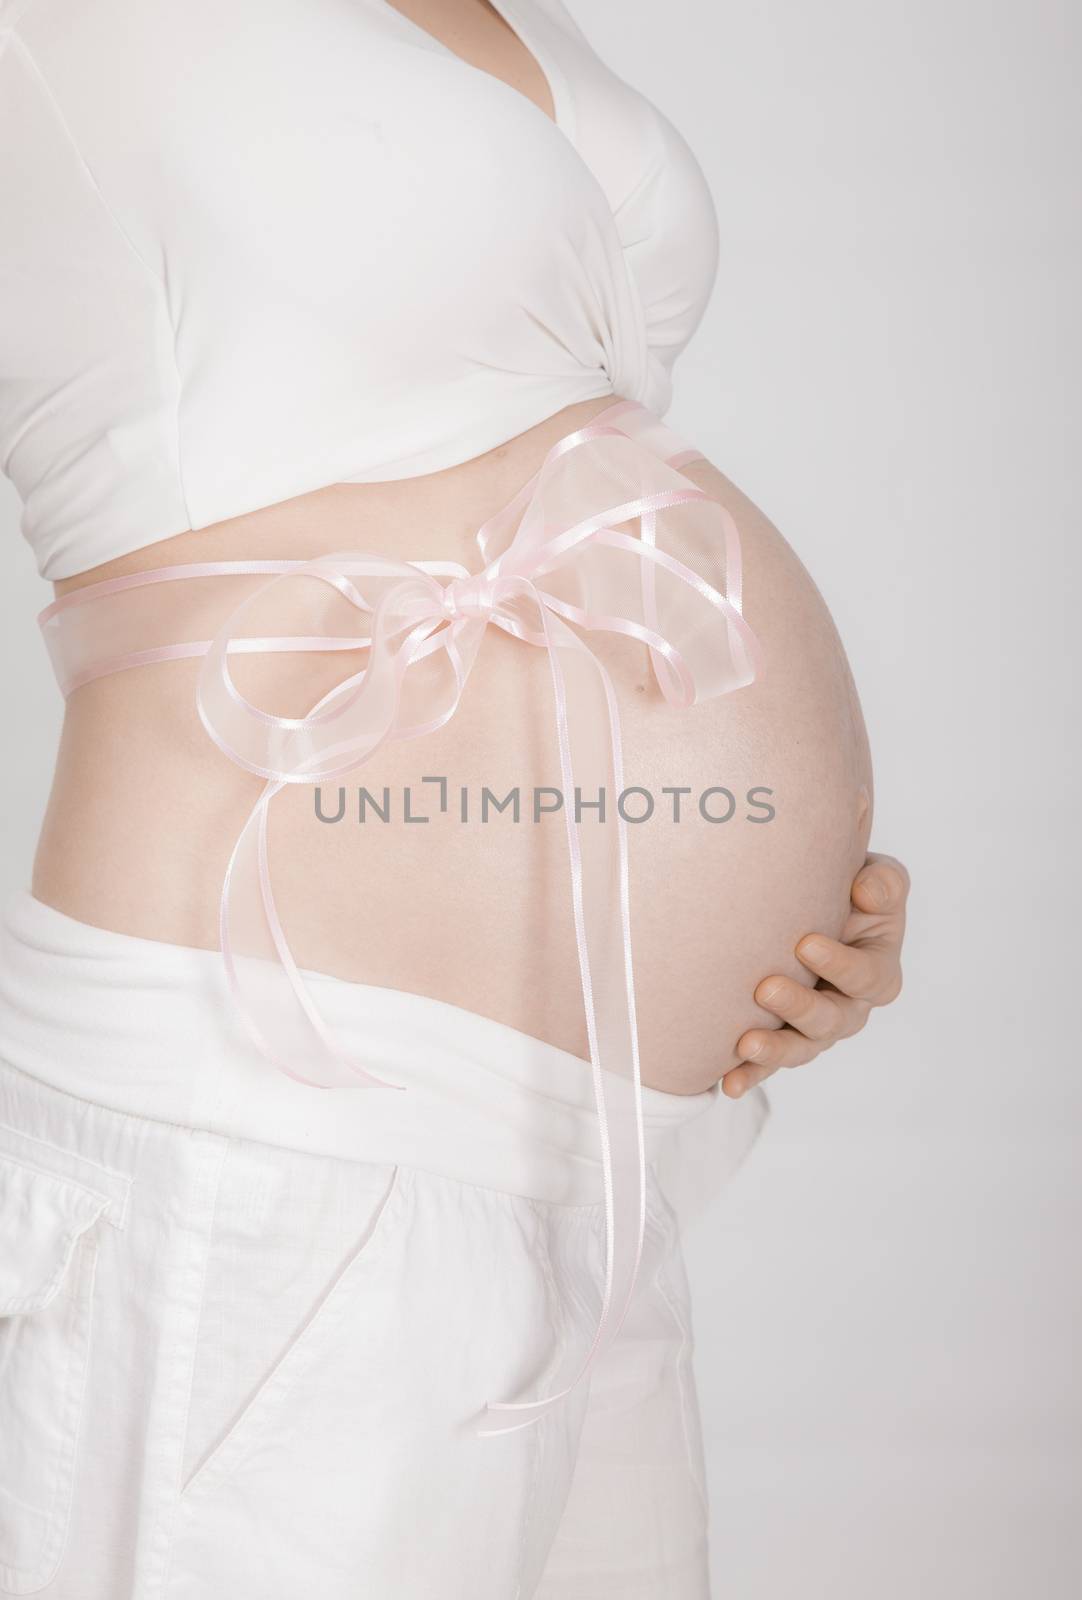 Pregnant Abdomen Pink Ribbon by vilevi